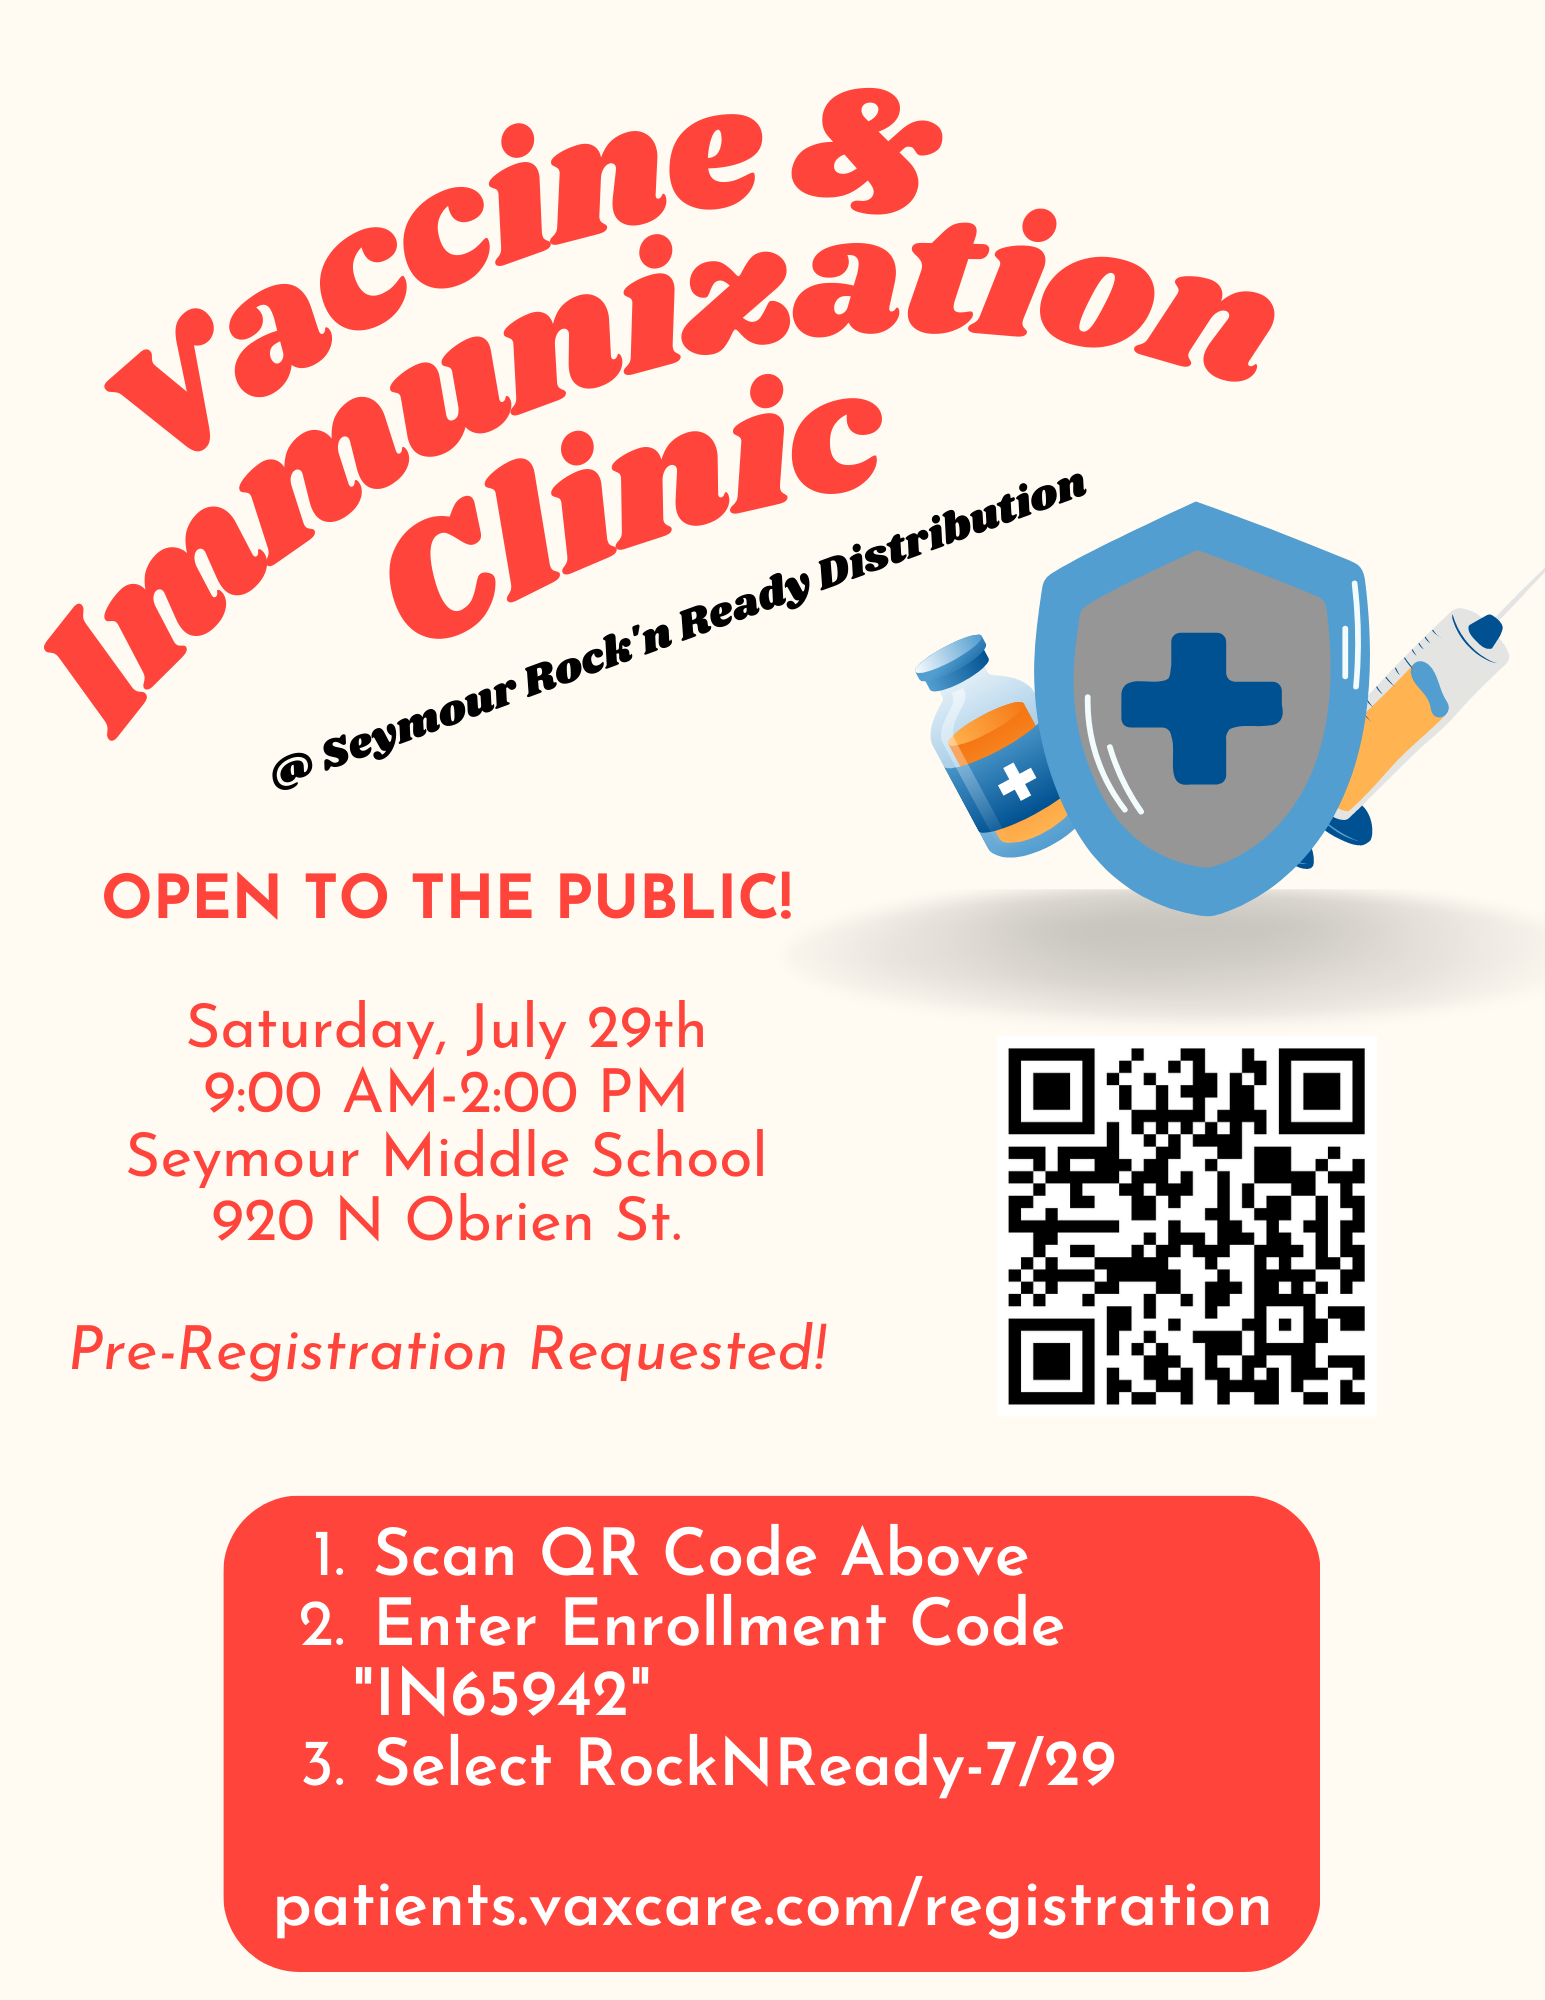 vaccine flyer